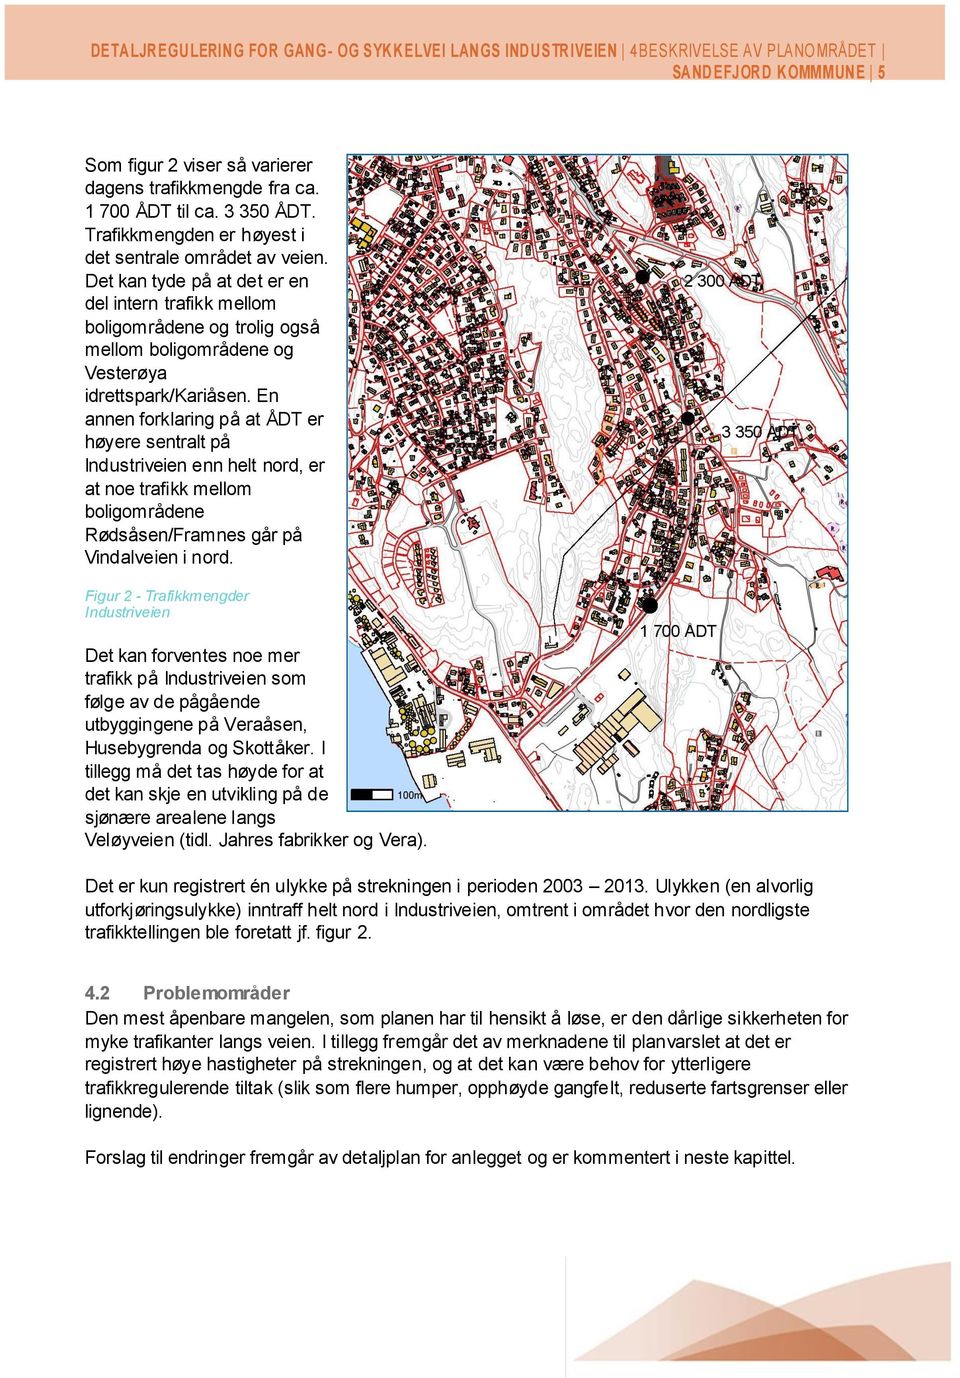 En annen forklaring på at ÅDT er høyere sentralt på Industriveien enn helt nord, er at noe trafikk mellom boligområdene Rødsåsen/Framnes går på Vindalveien i nord.